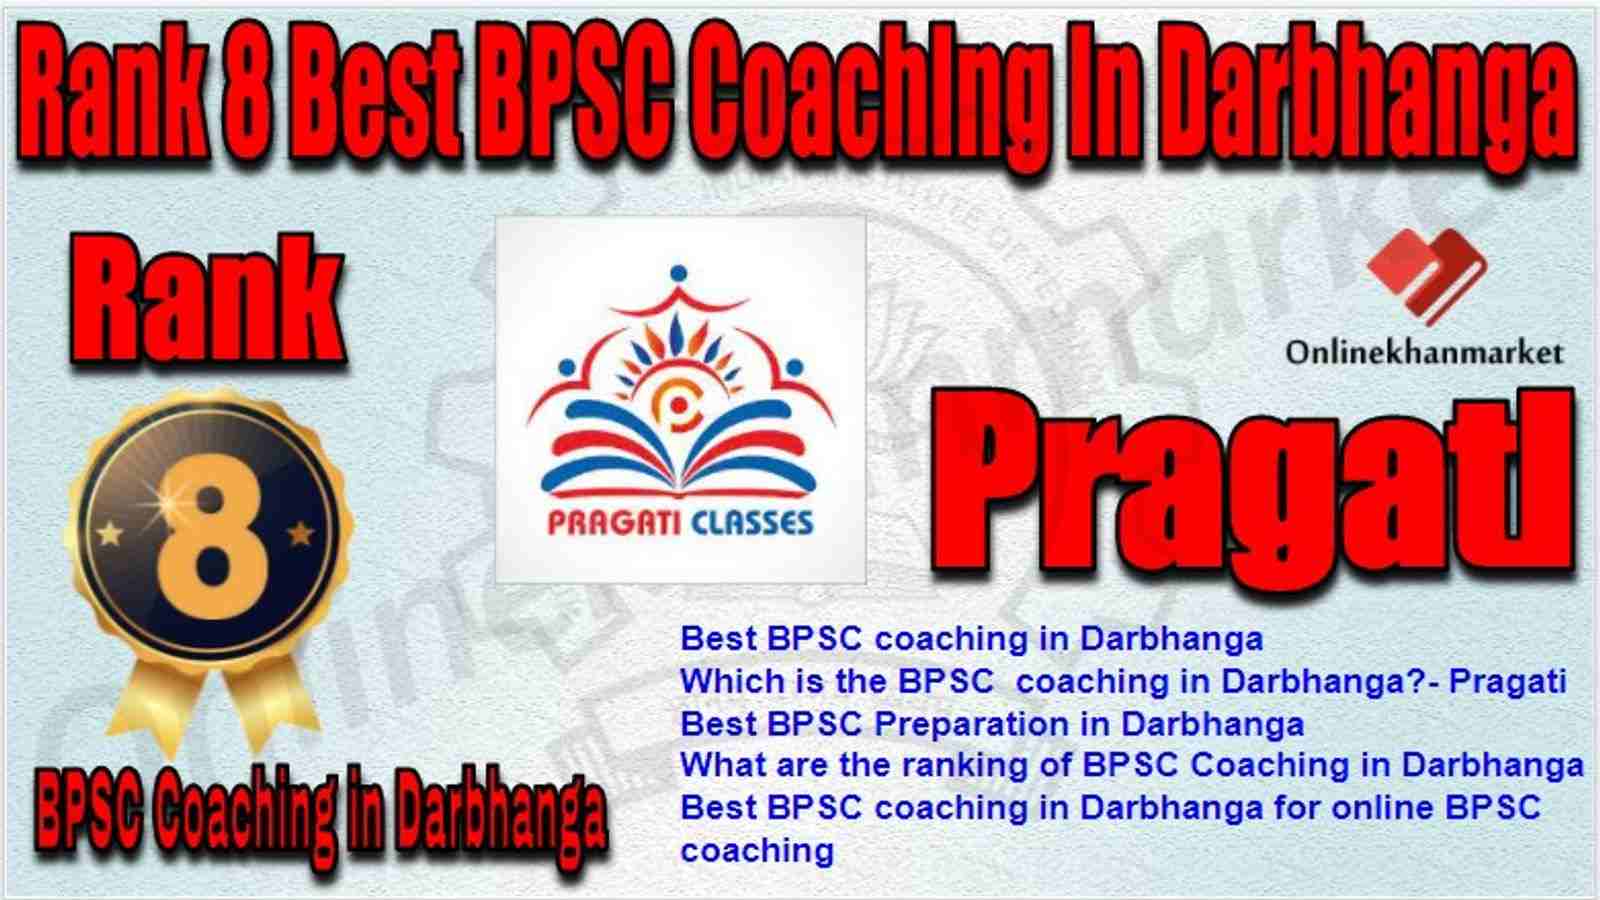 Rank 8 Best BPSC Coaching in darbhanga